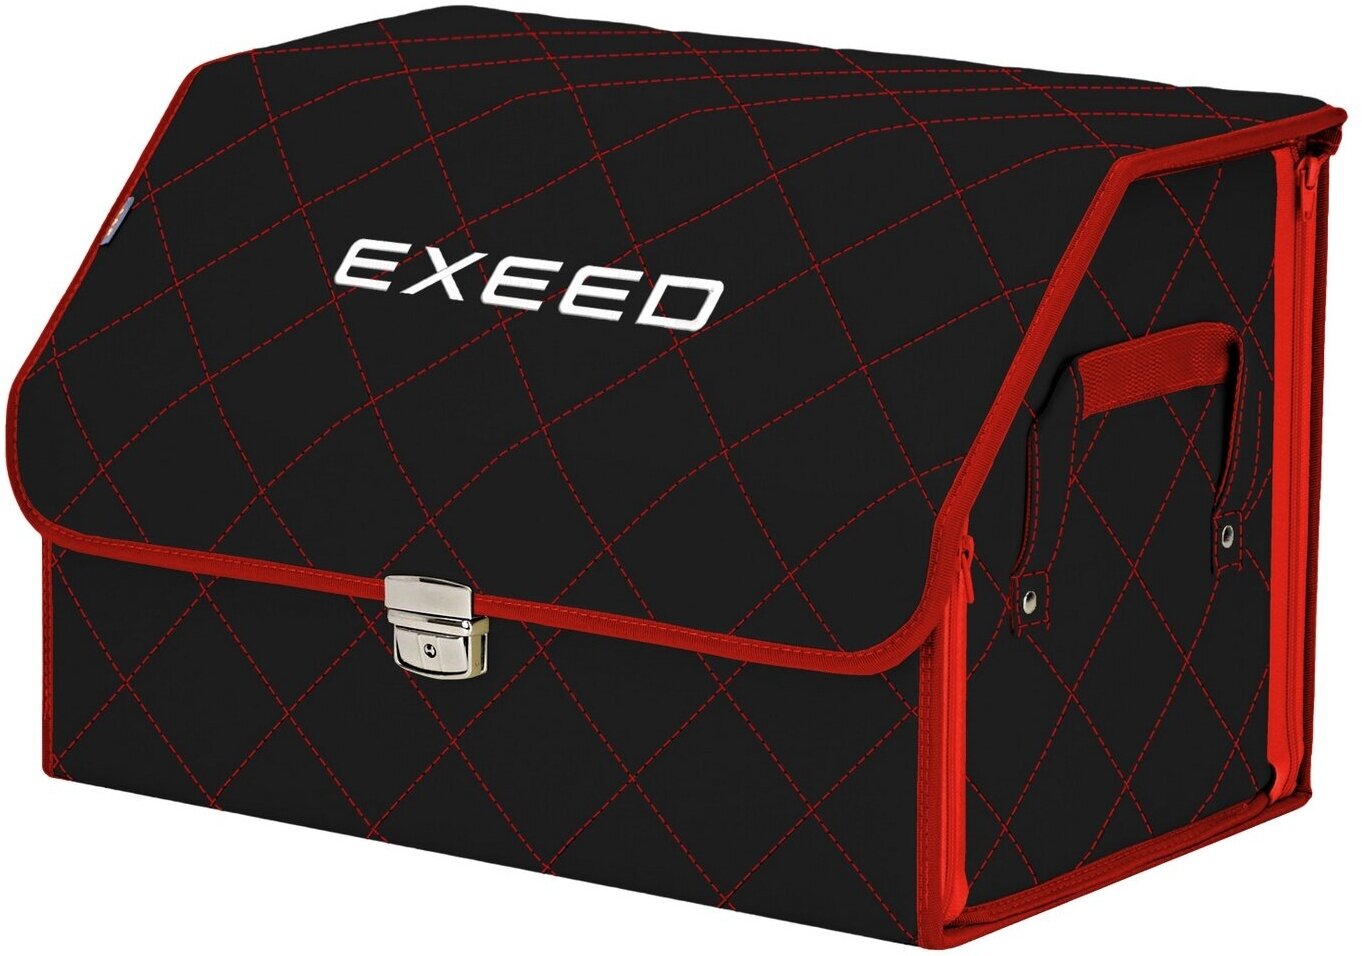 Органайзер-саквояж в багажник "Союз Премиум" (размер L). Цвет: черный с красной прострочкой Ромб и вышивкой Exeed (Эксид).